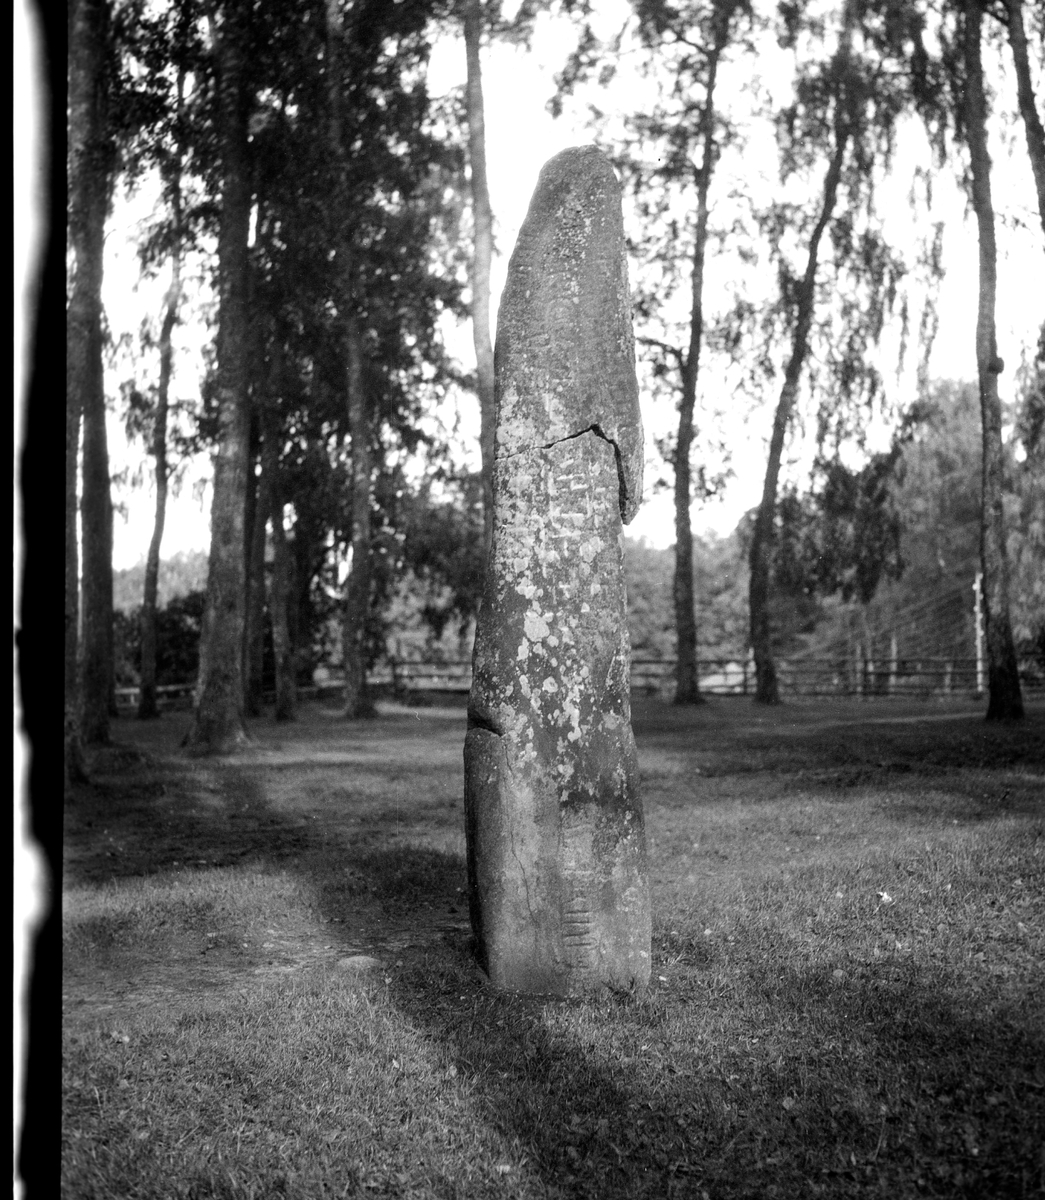 Rest sten (Utterberg) på krönet av Ås, i åkerkant. 
I anslutning till domarring.